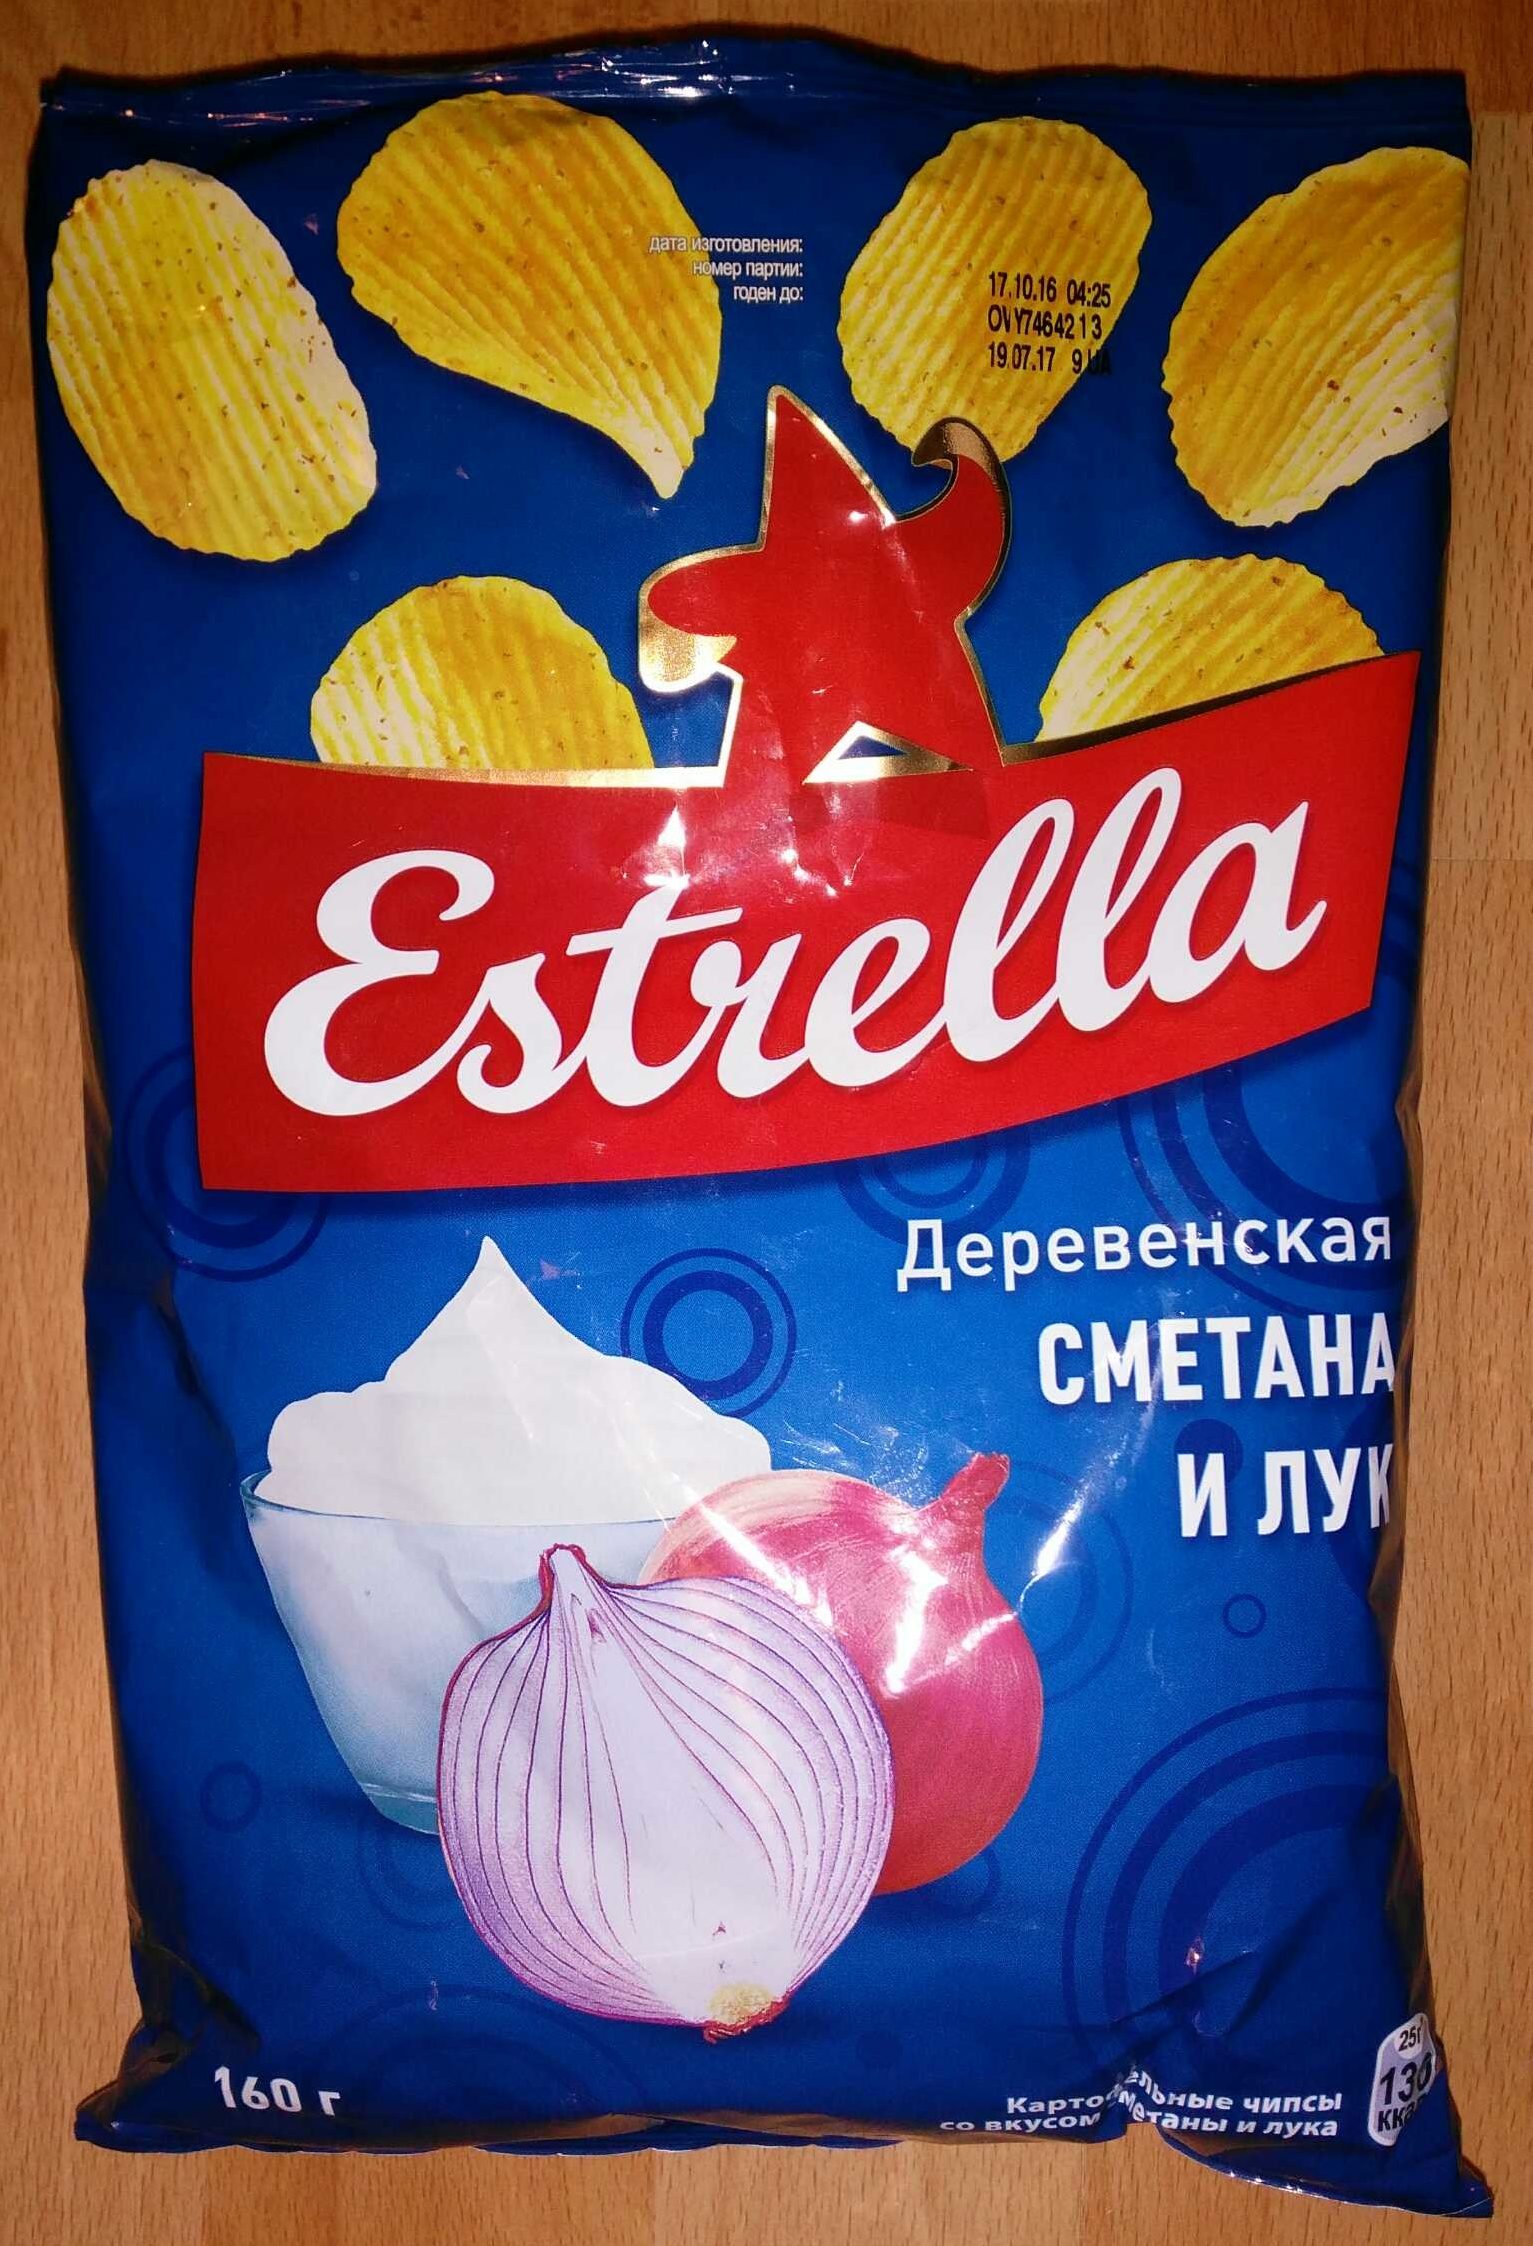 Estrella Деревенская «Сметана и лук» - Продукт